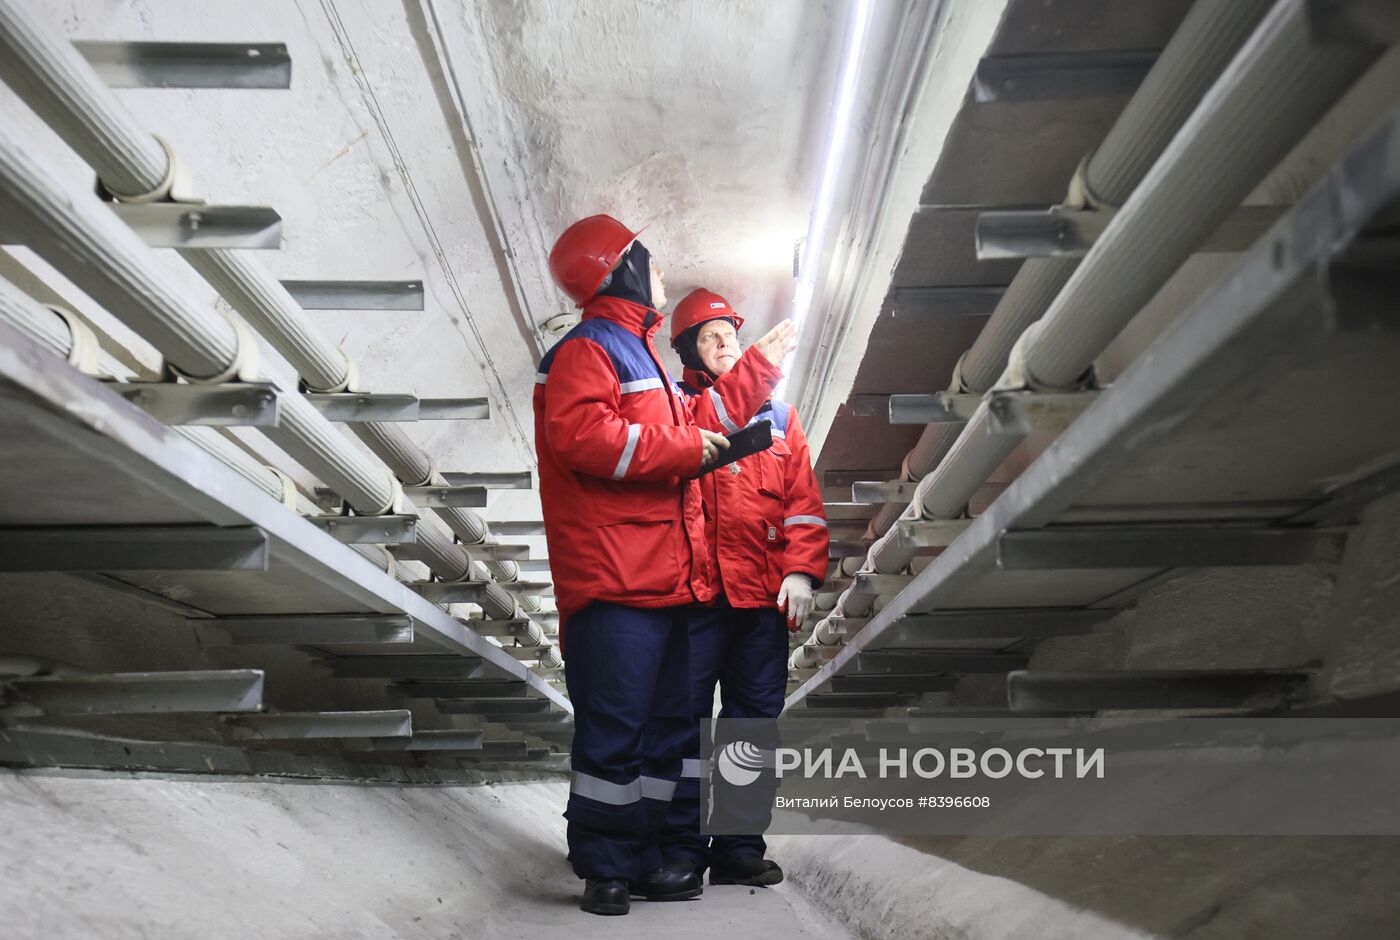 Демонстрация готовности московских энергетиков к периоду паводков